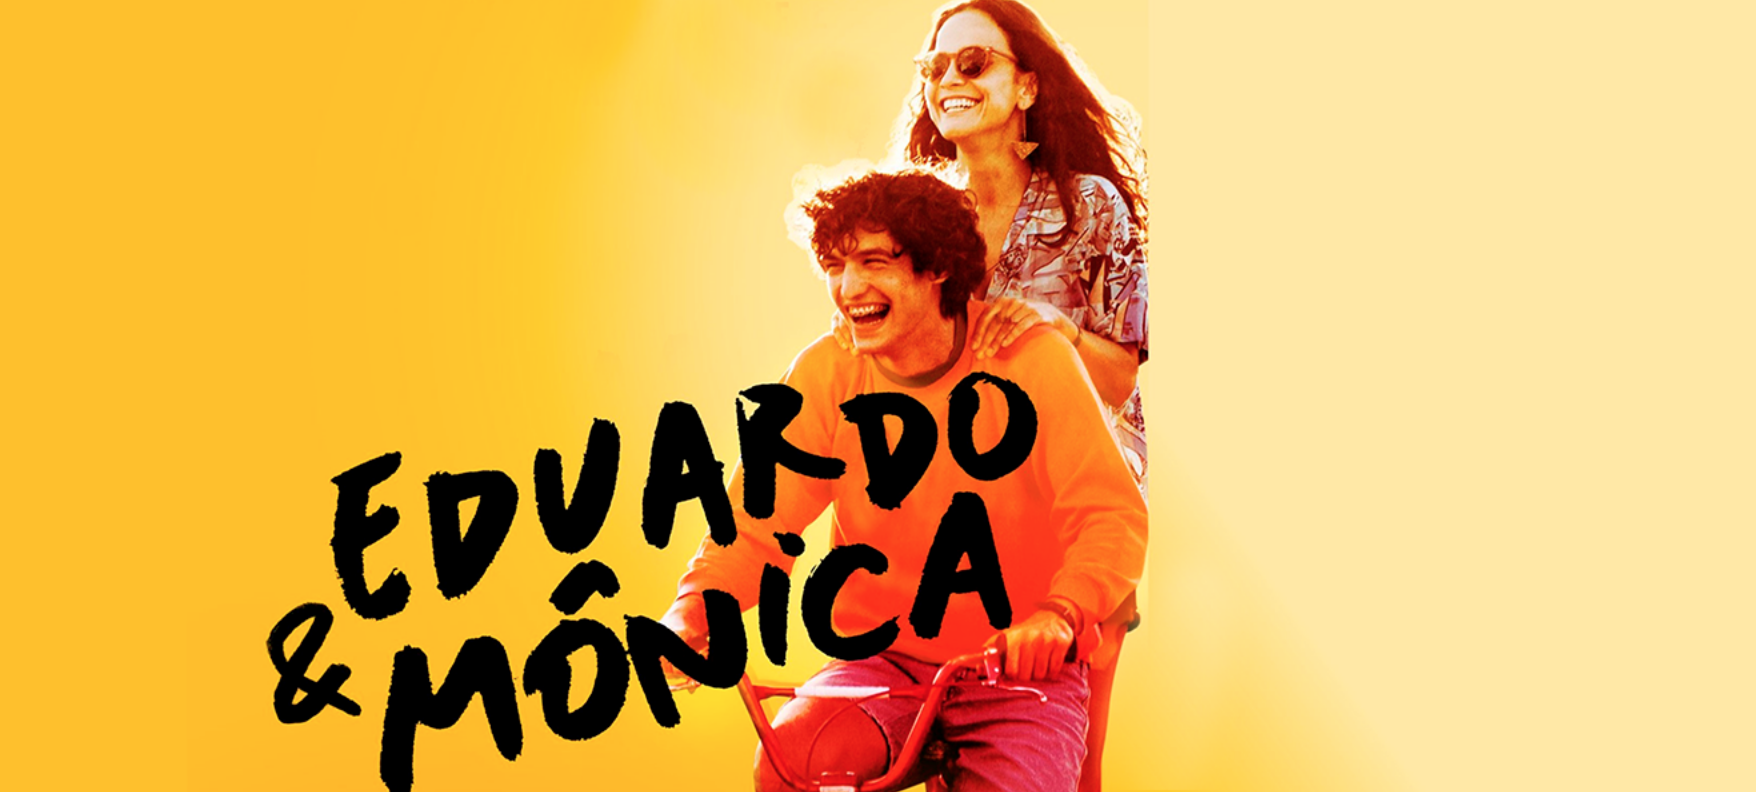 Eduardo & Monica a été réalisé par René Sampaio. ©DR